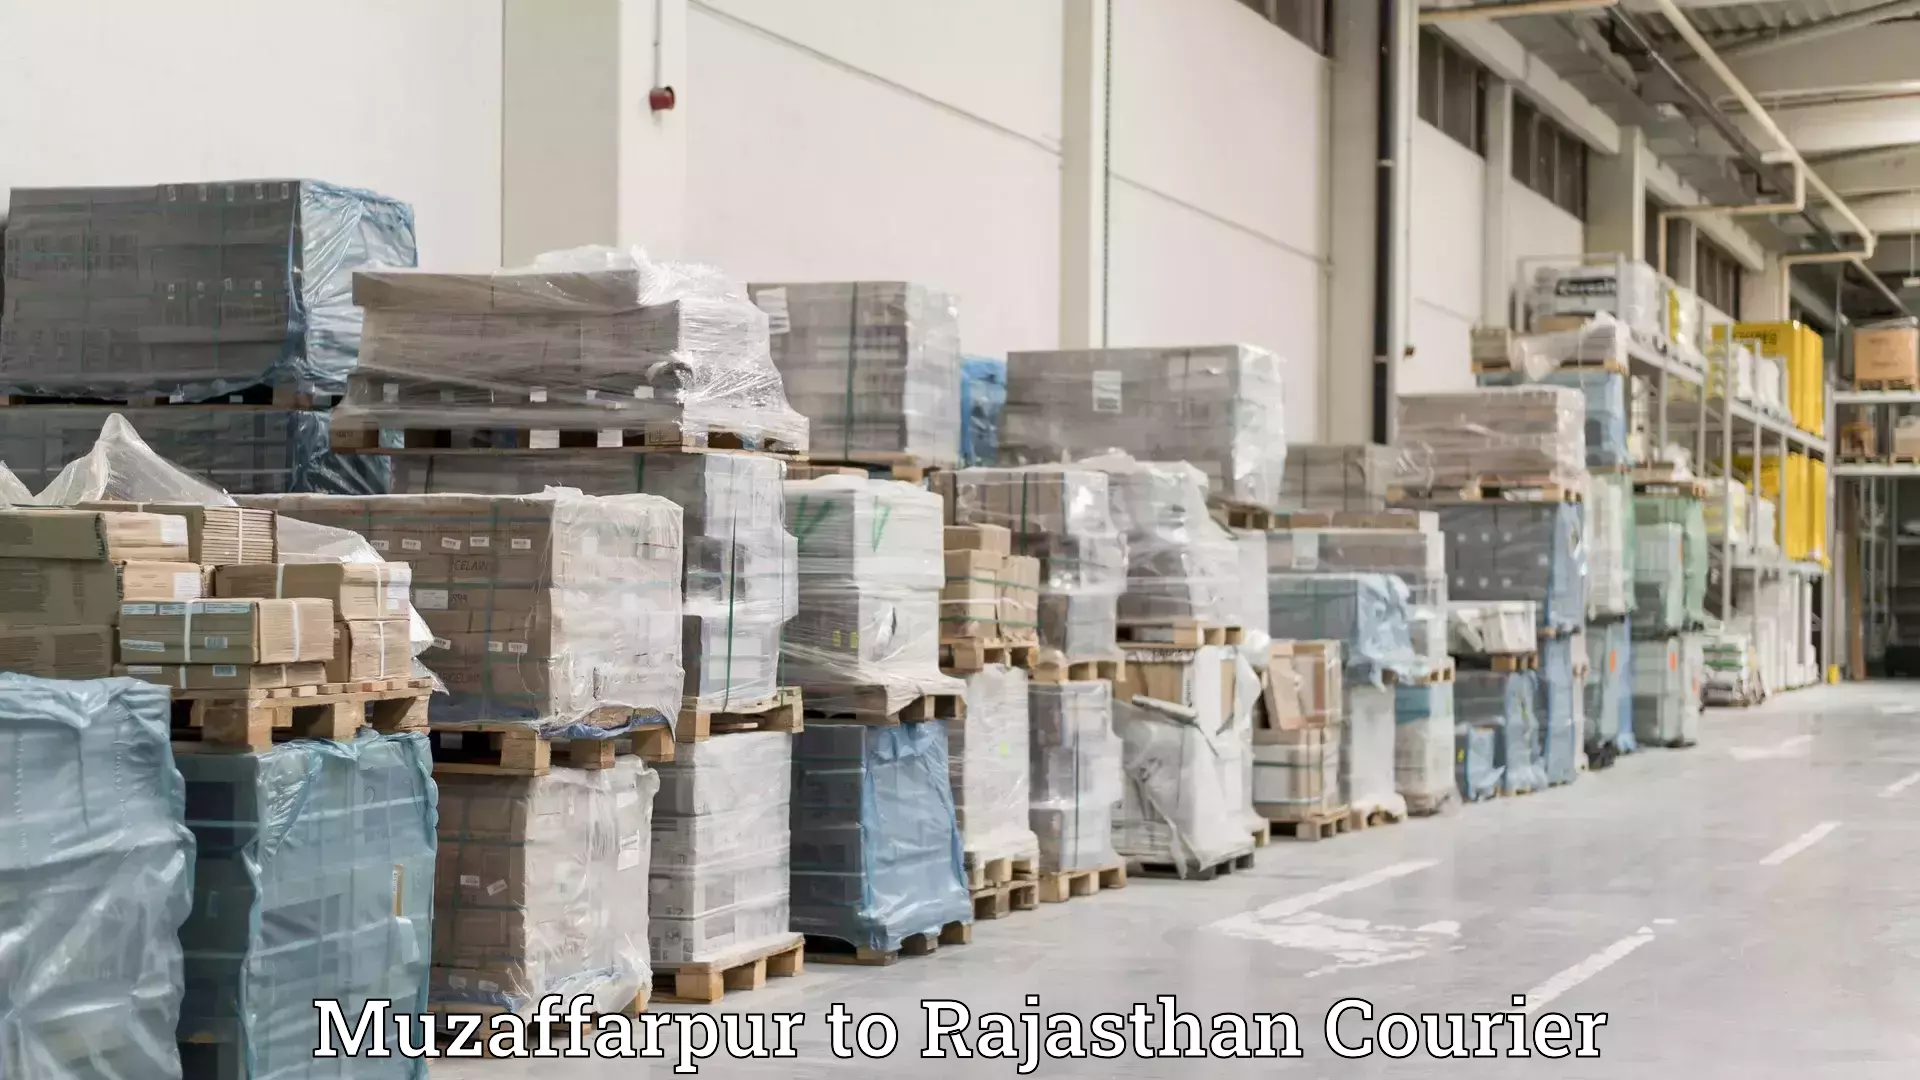 Furniture transport professionals Muzaffarpur to Rajasthan